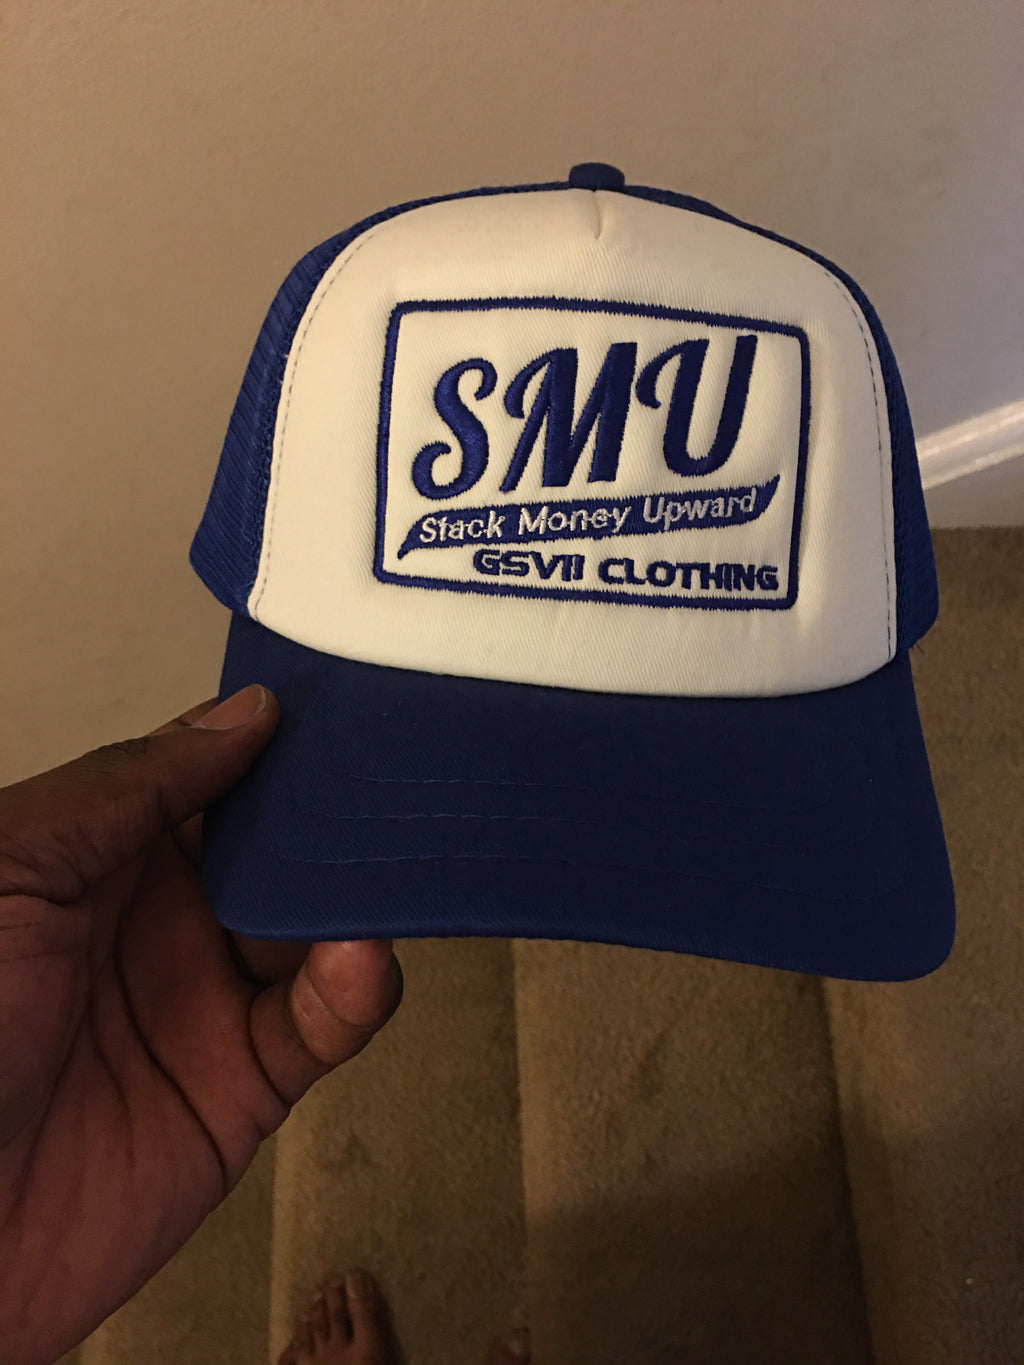 SMU(Stack Money Upward) Trucker Hat